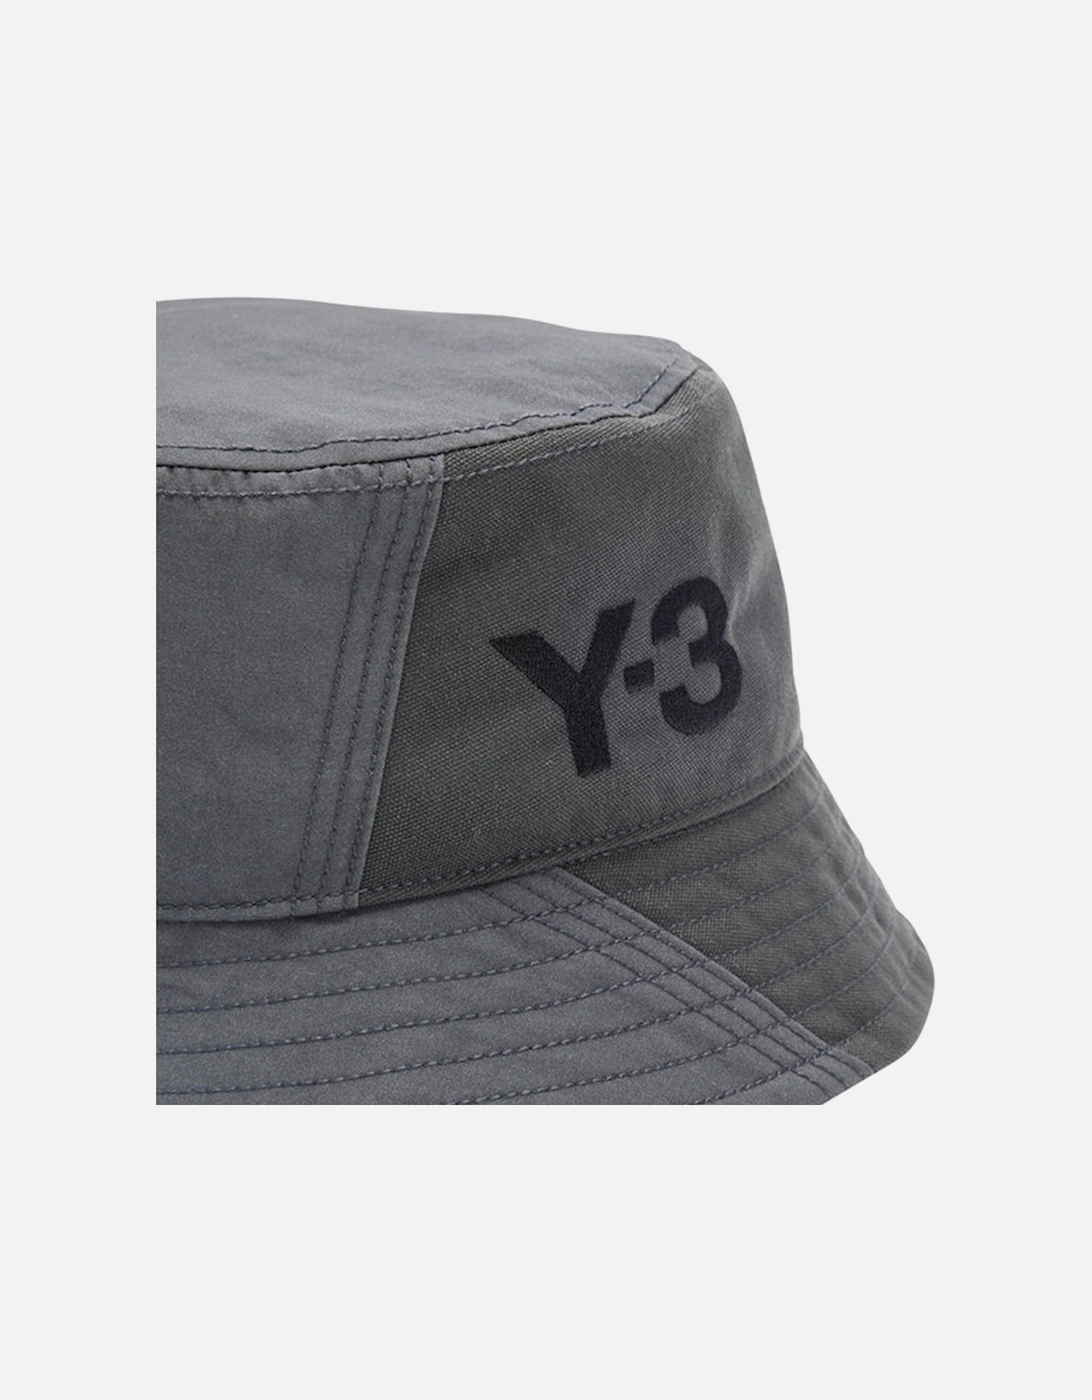 Y-3 Mens Classic Bucket Hat Grey